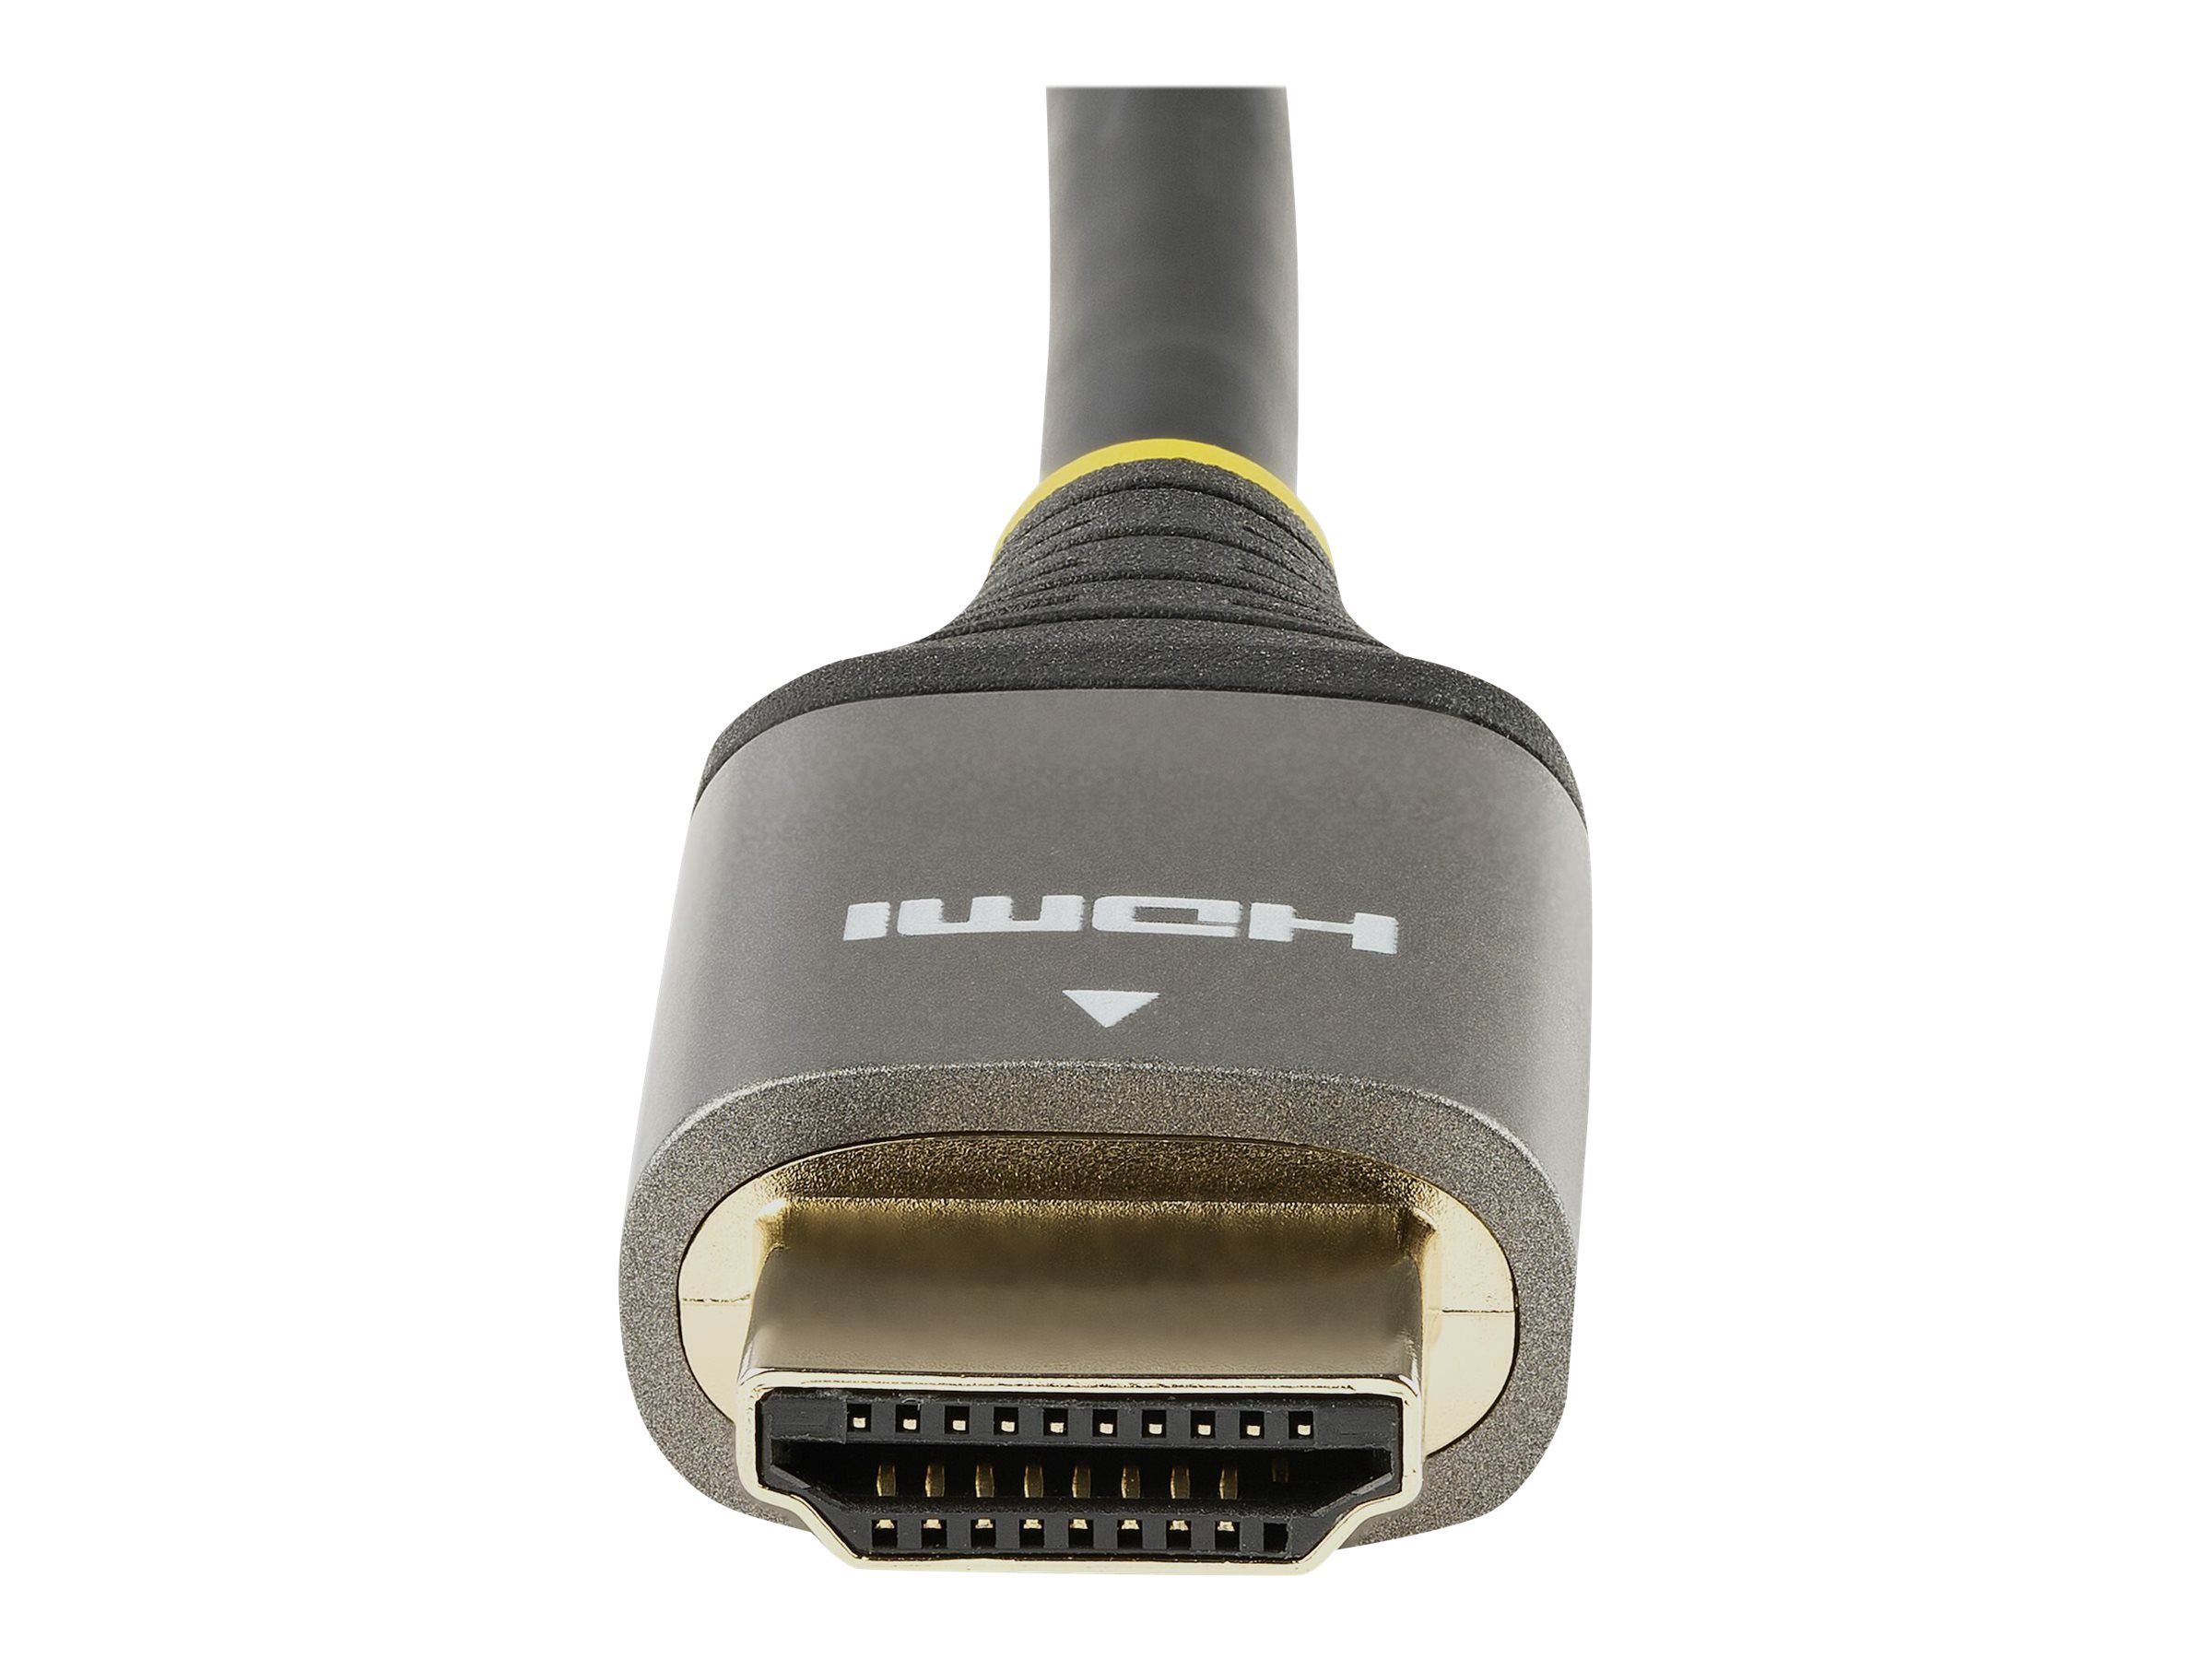 StarTech.com Câble HDMI 2.1 8K - 1m - Câble HDMI Certifié Ultra High Speed 48Gbps - 8K 60Hz/4K 120Hz HDR10+ eARC - Câble Ultra HD 8K HDMI - Écran/TV/Affichage - Gaine Flexible TPE (HDMM21V1M) - Ultra High Speed - câble HDMI avec Ethernet - HDMI mâle pour HDMI mâle - 1 m - double blindage - gris, noir - passif, support 4K 120 Hz, support pour 8K60Hz - pour P/N: 4PORT-8K-HDMI-SWITCH - HDMM21V1M - Câbles HDMI